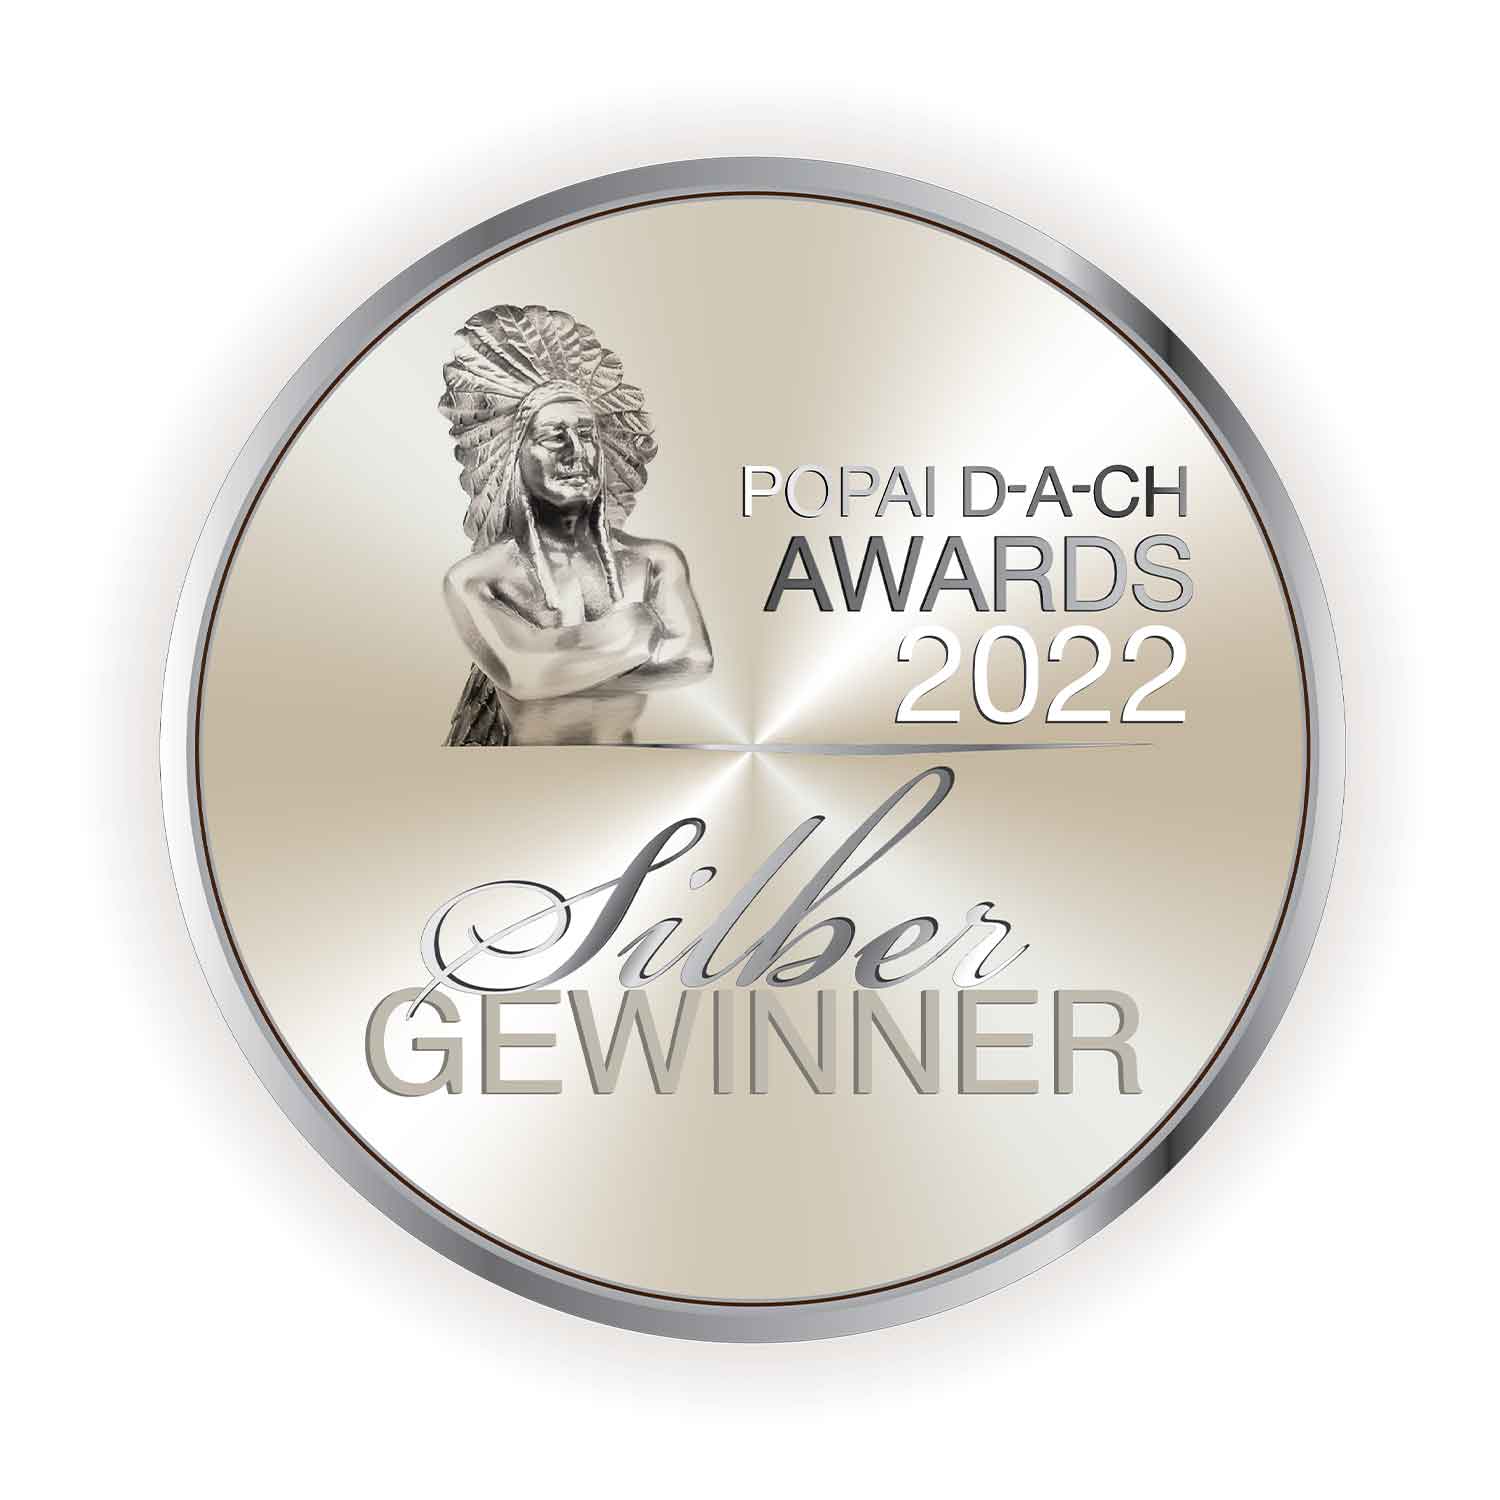 POPAI D-A-CH Award argint 2022